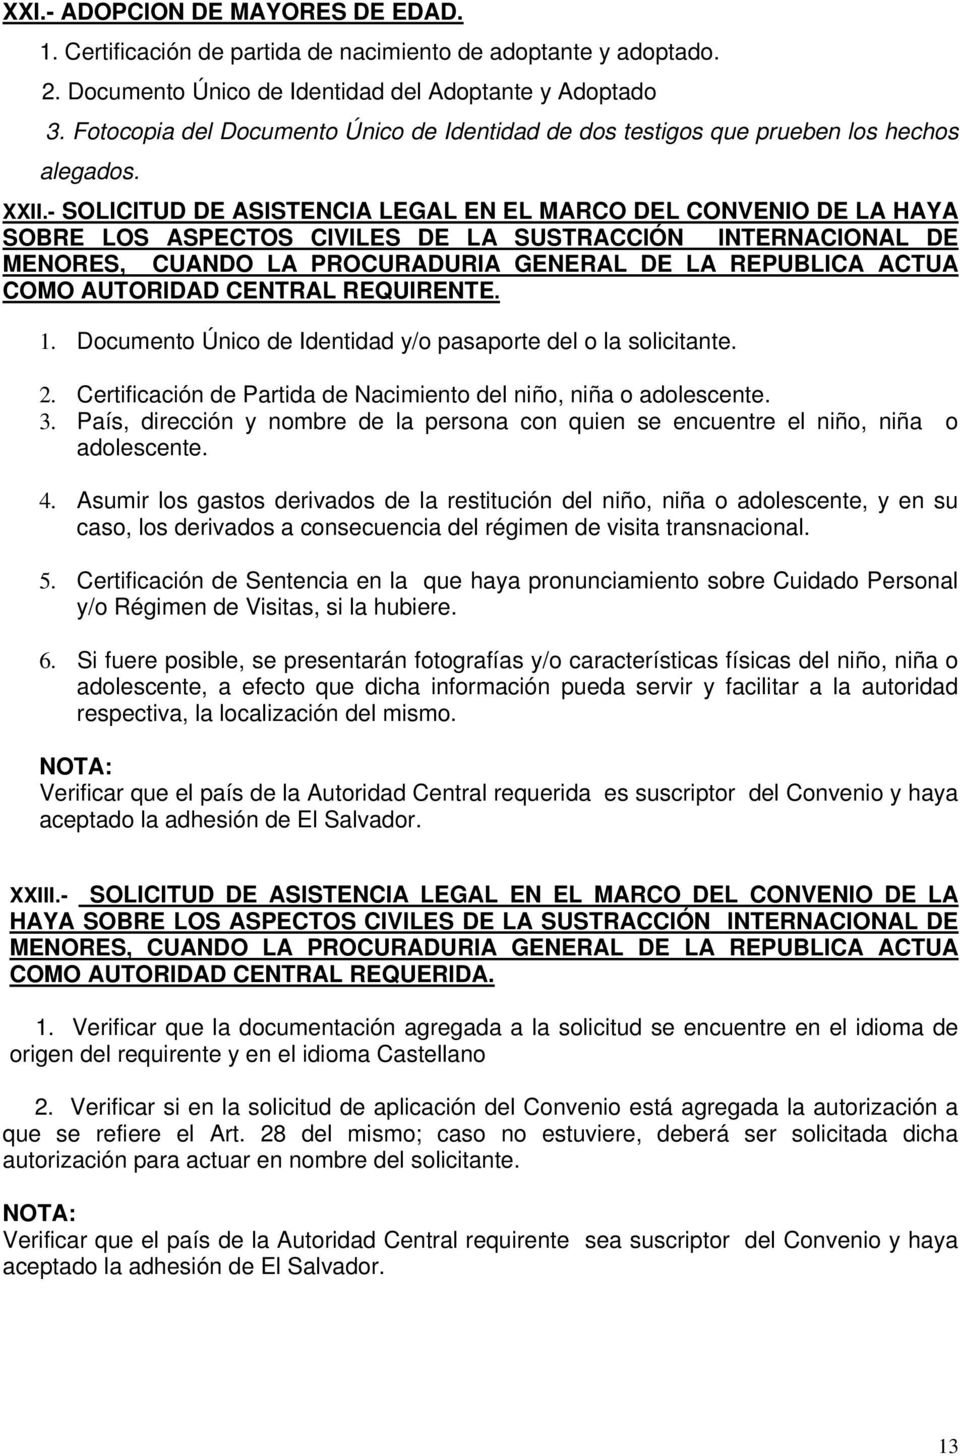 - SOLICITUD DE ASISTENCIA LEGAL EN EL MARCO DEL CONVENIO DE LA HAYA SOBRE LOS ASPECTOS CIVILES DE LA SUSTRACCIÓN INTERNACIONAL DE MENORES, CUANDO LA PROCURADURIA GENERAL DE LA REPUBLICA ACTUA COMO